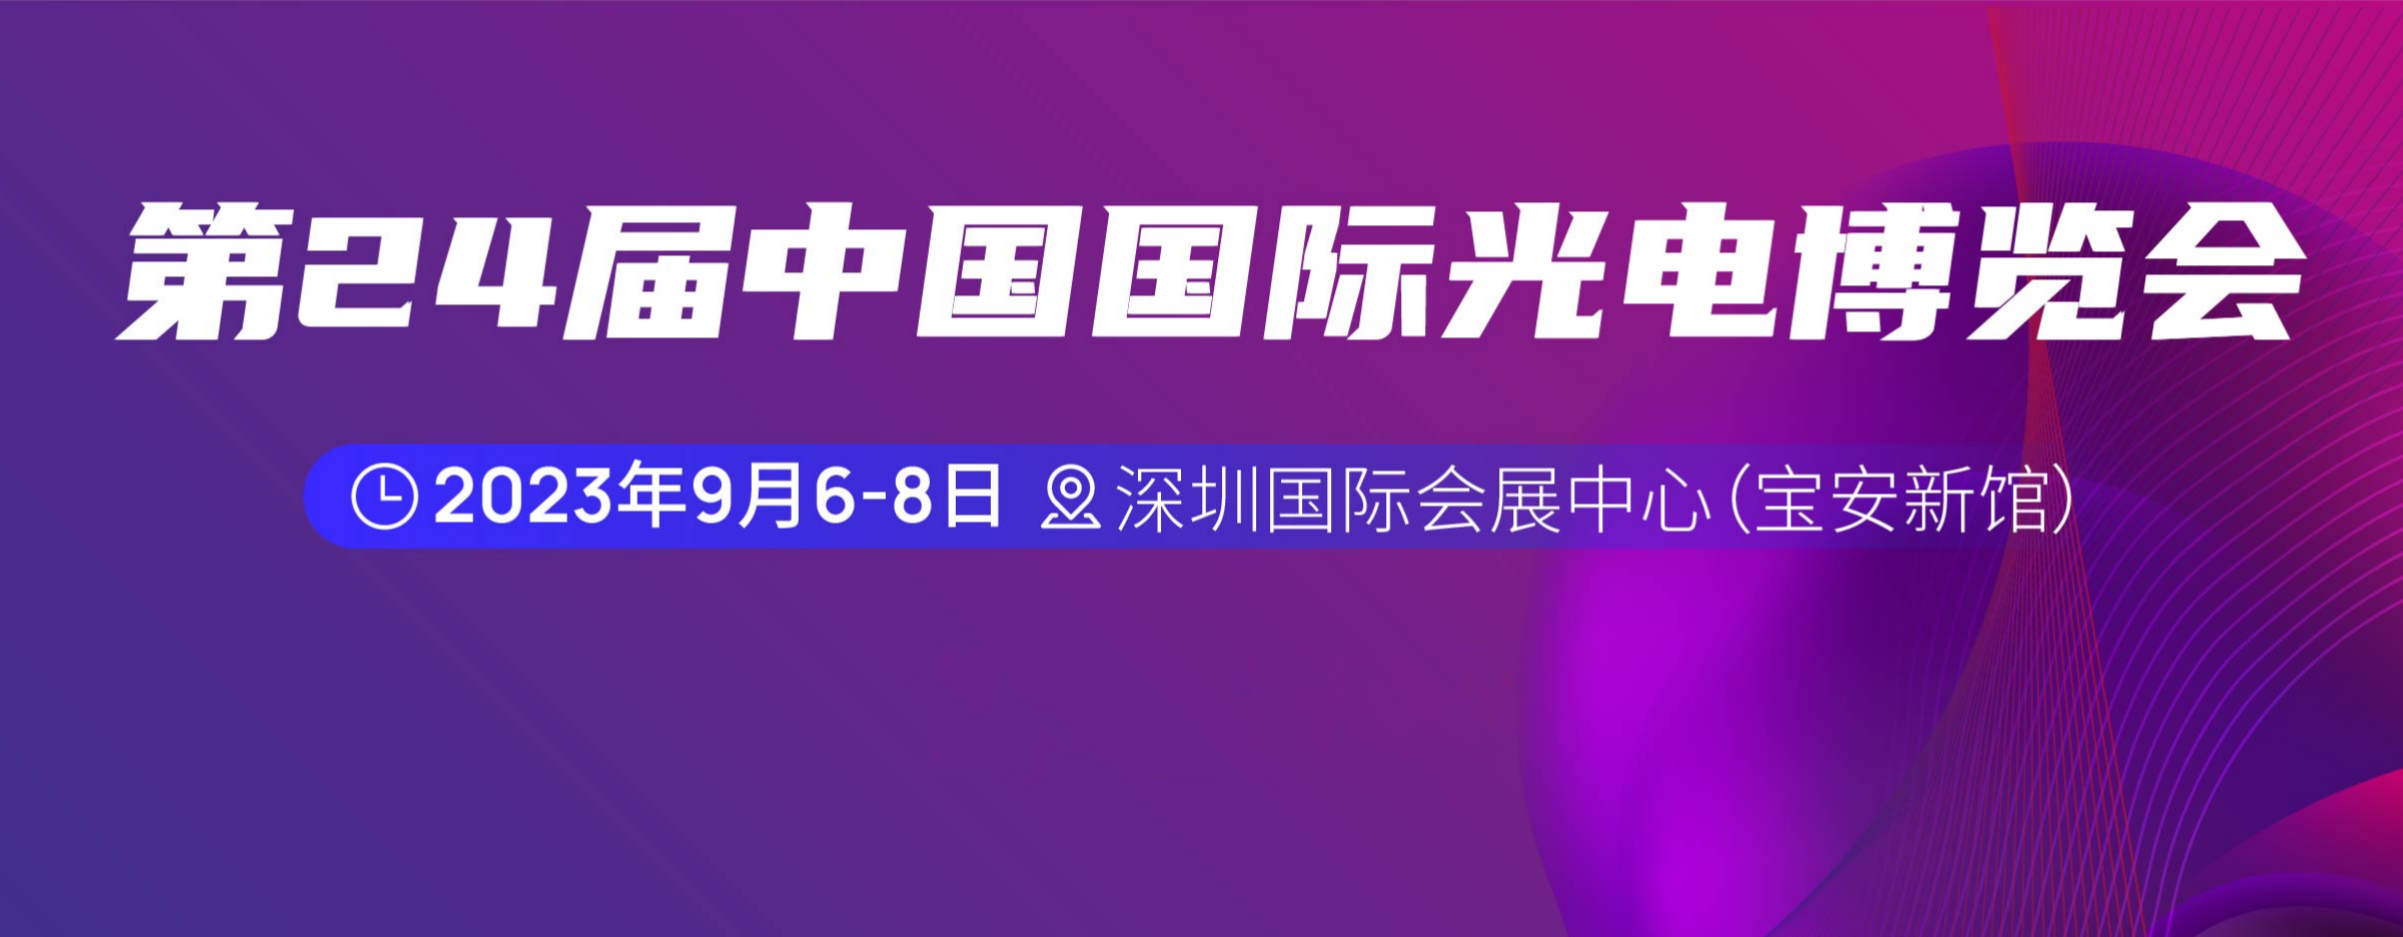 欢迎莅临 | 联讯仪器携800G TestHead 参加2023中国国际光电博览会